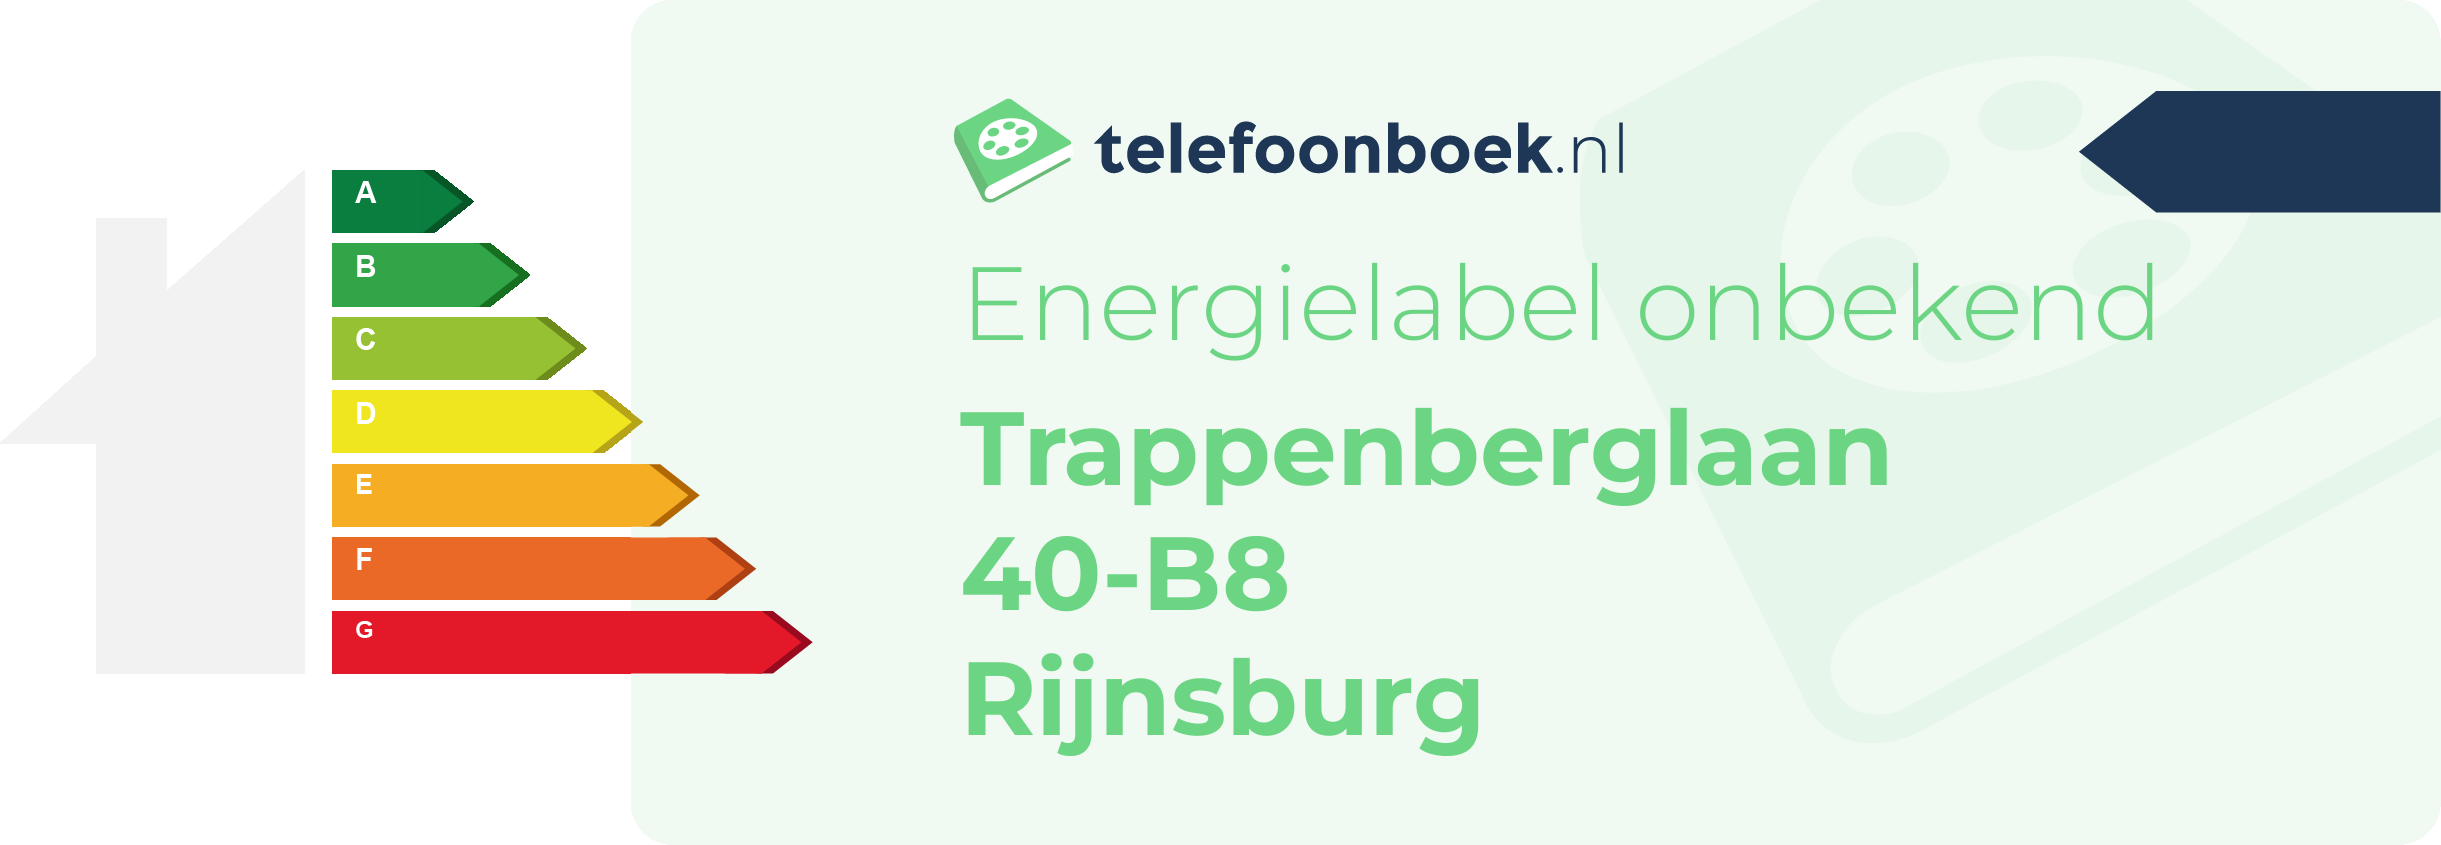 Energielabel Trappenberglaan 40-B8 Rijnsburg